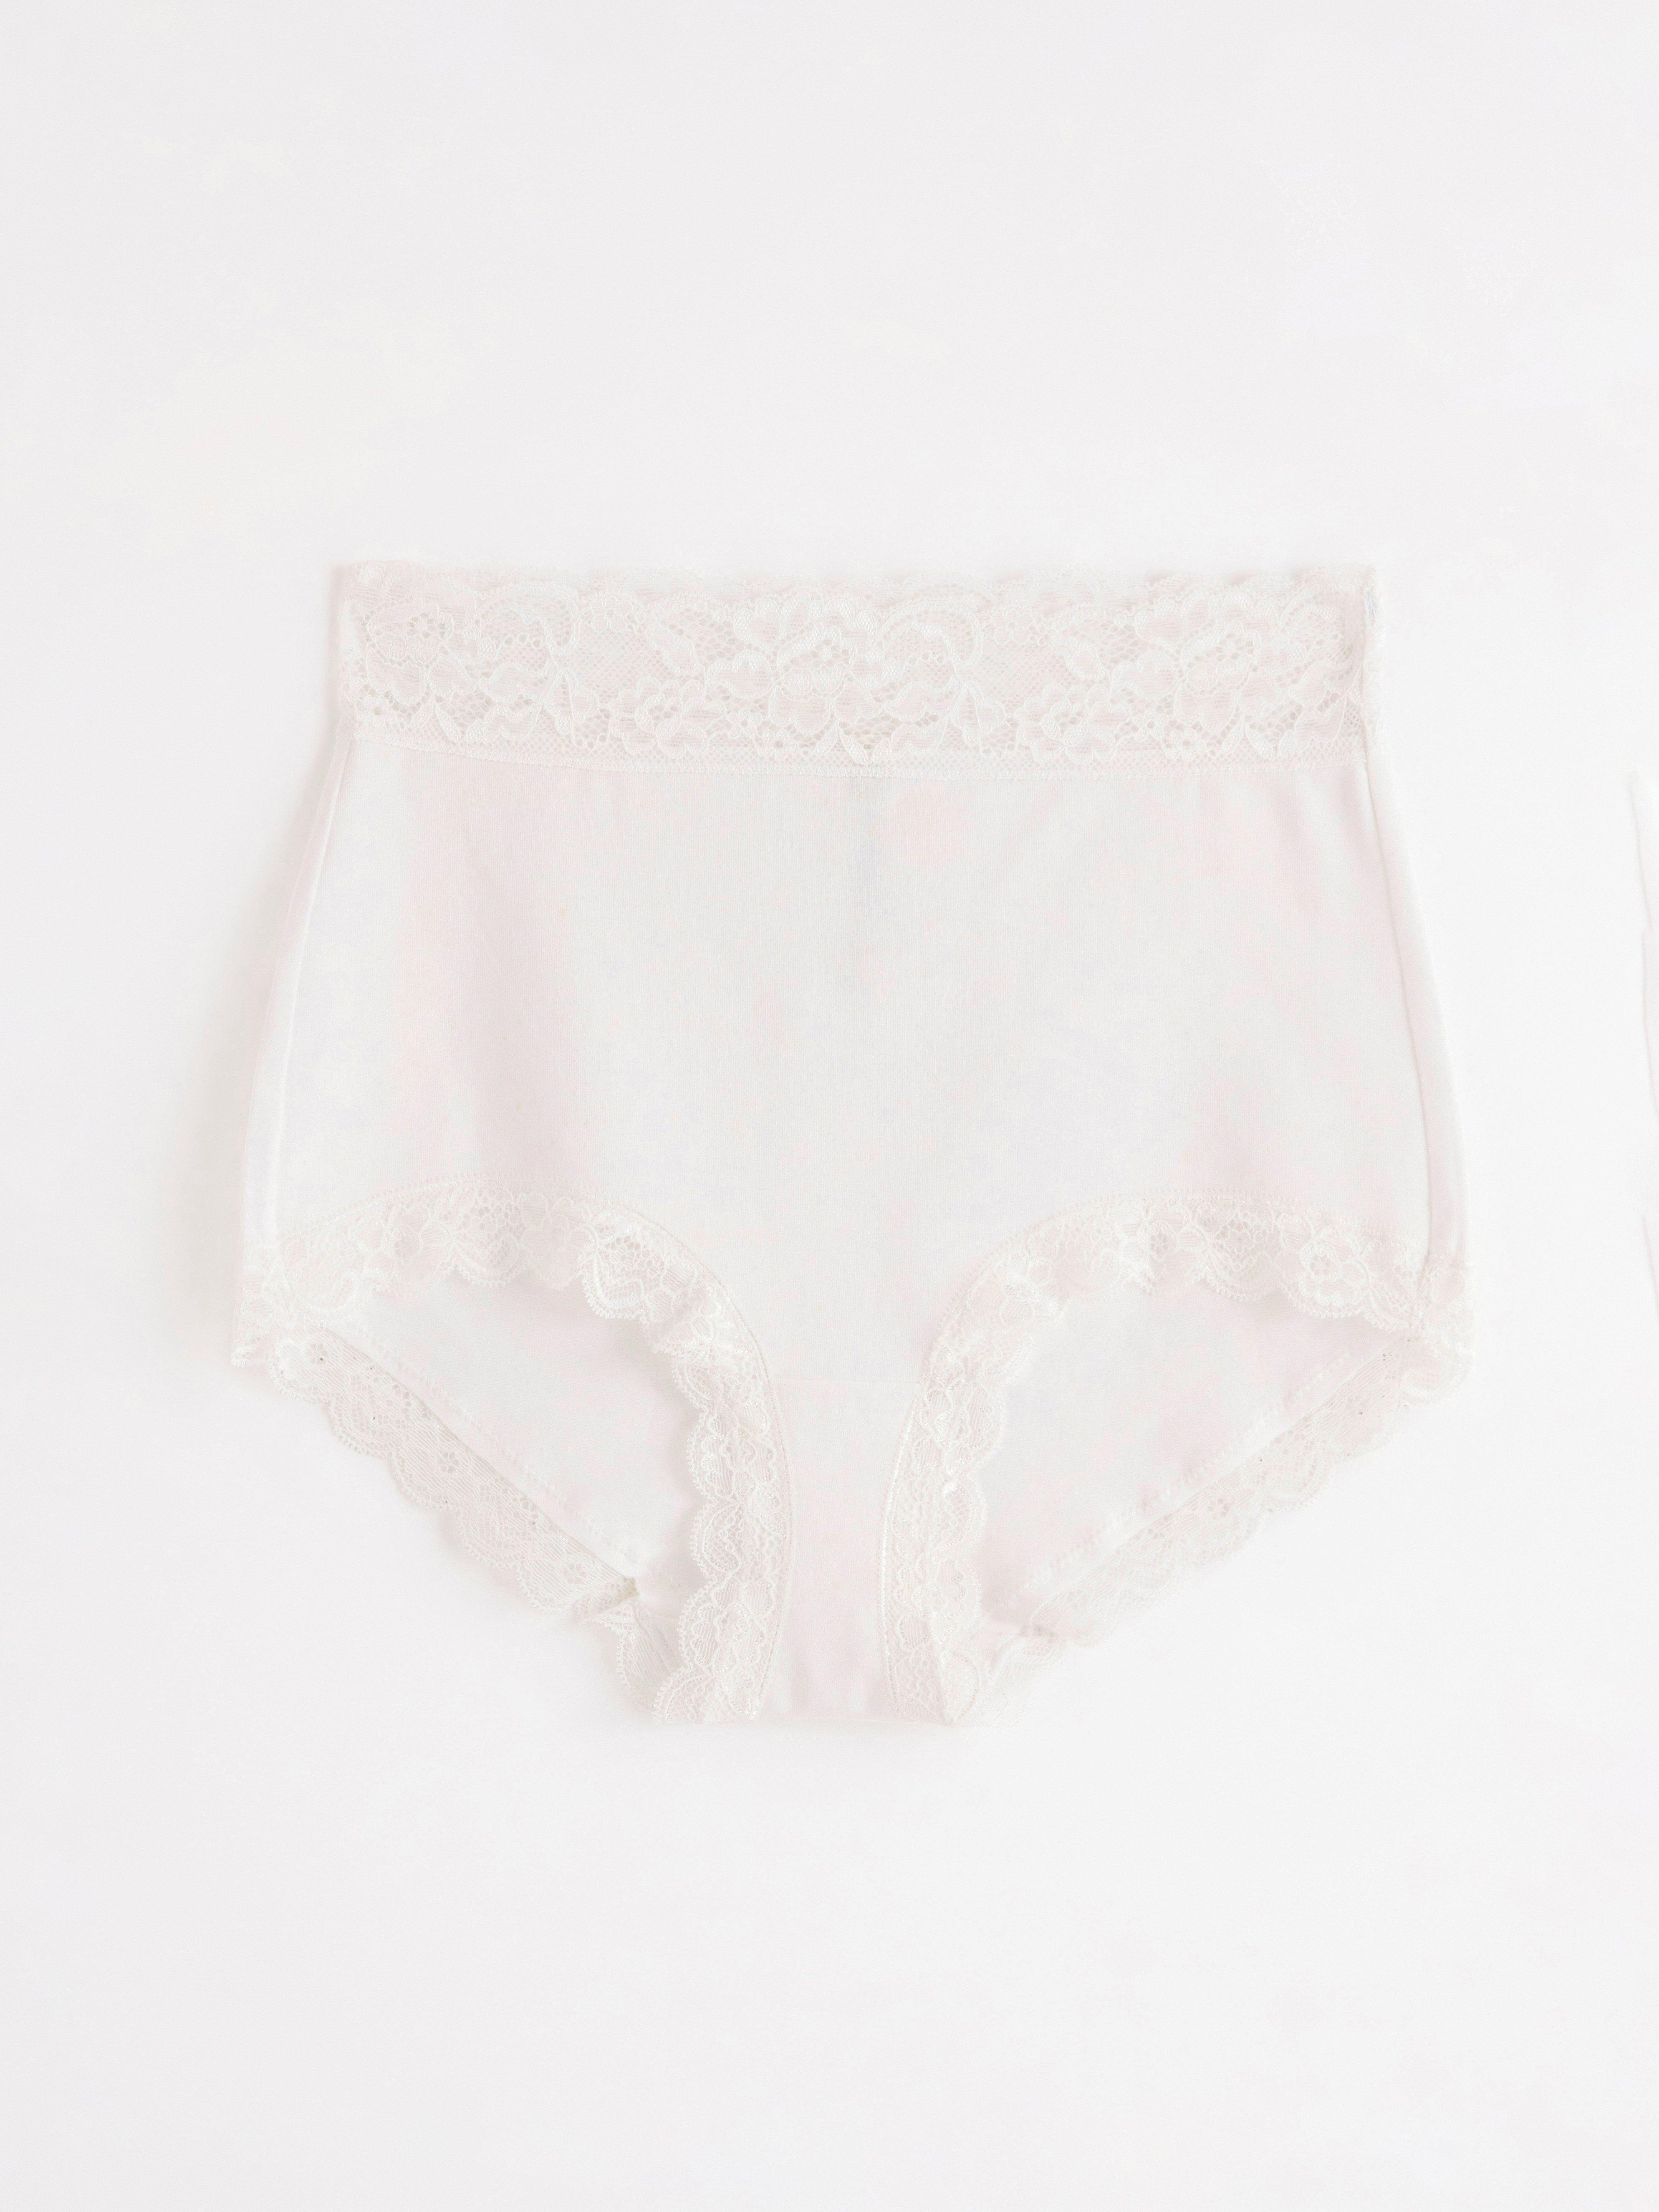 Aerie Women's Size Small Navy Cotton Boybrief Underwear NWT